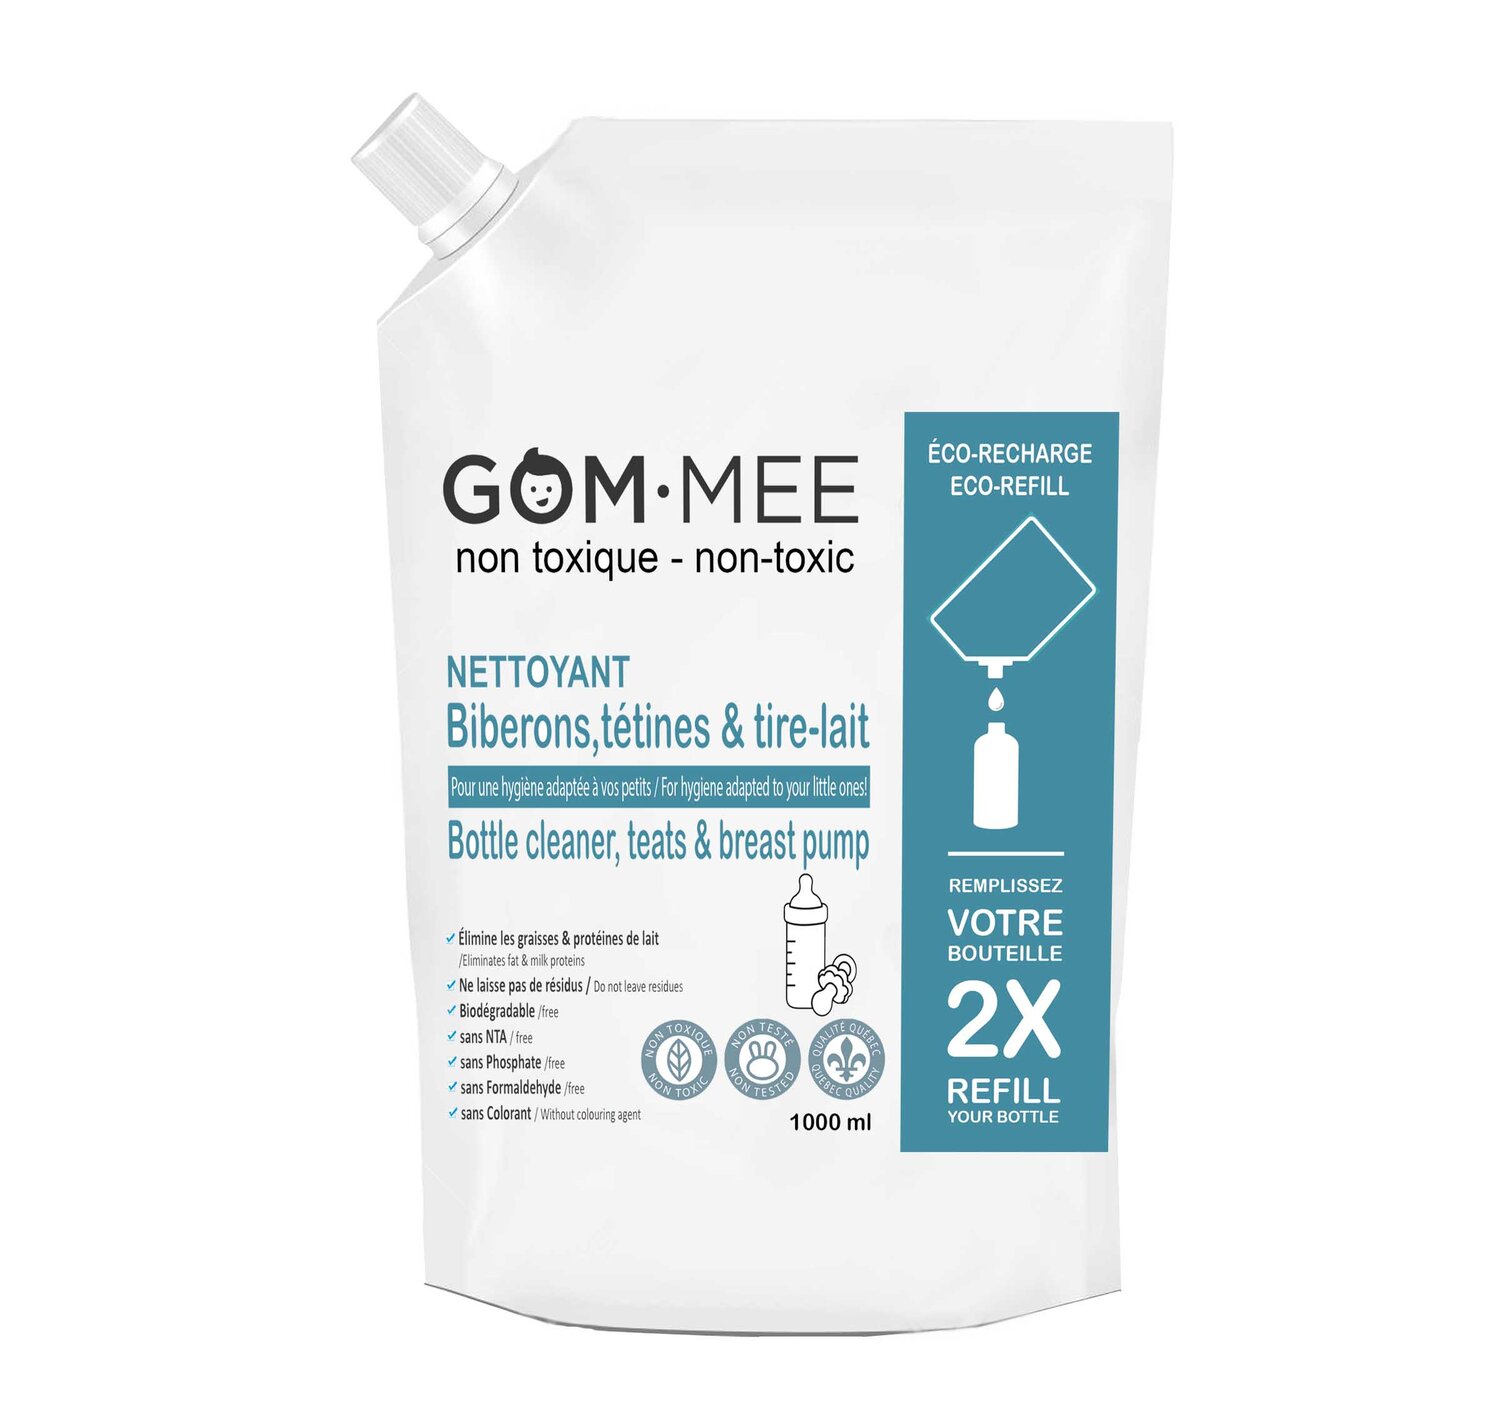 Nettoyant à Biberons Tétines Tire-lait Biodégradable RECHARGE 1000 ml   GOMMEE — GOM-MEE croûte de lait; soropon, chapeau, allaitement, eczema